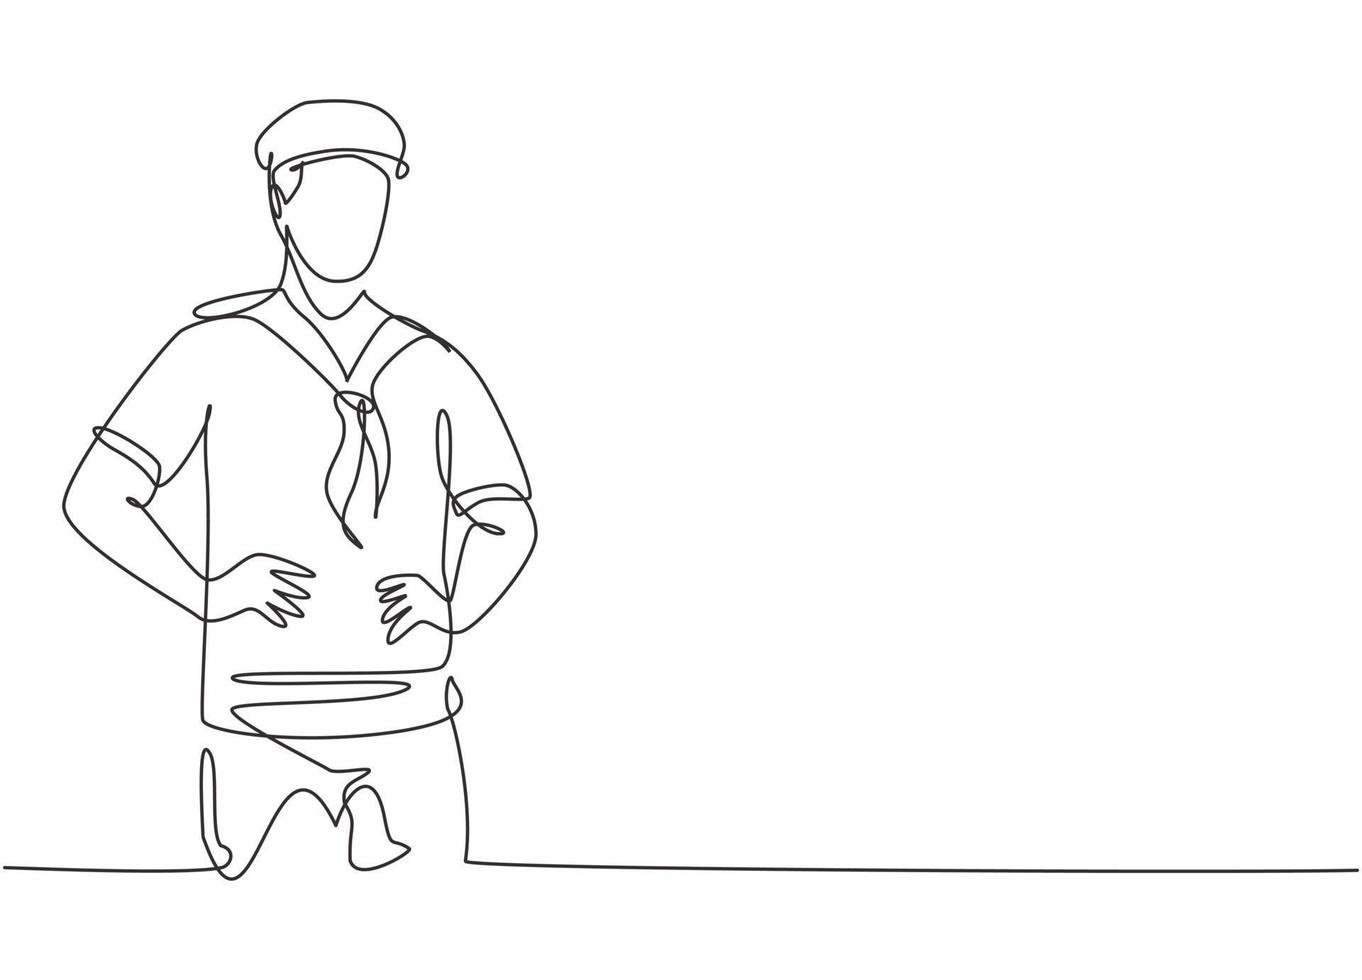 desenho de linha contínua de um jovem marinheiro vestindo uniforme de vela com chapéu antes de navegar. conceito minimalista de profissão de trabalho profissional. ilustração gráfica de vetor de desenho de linha única